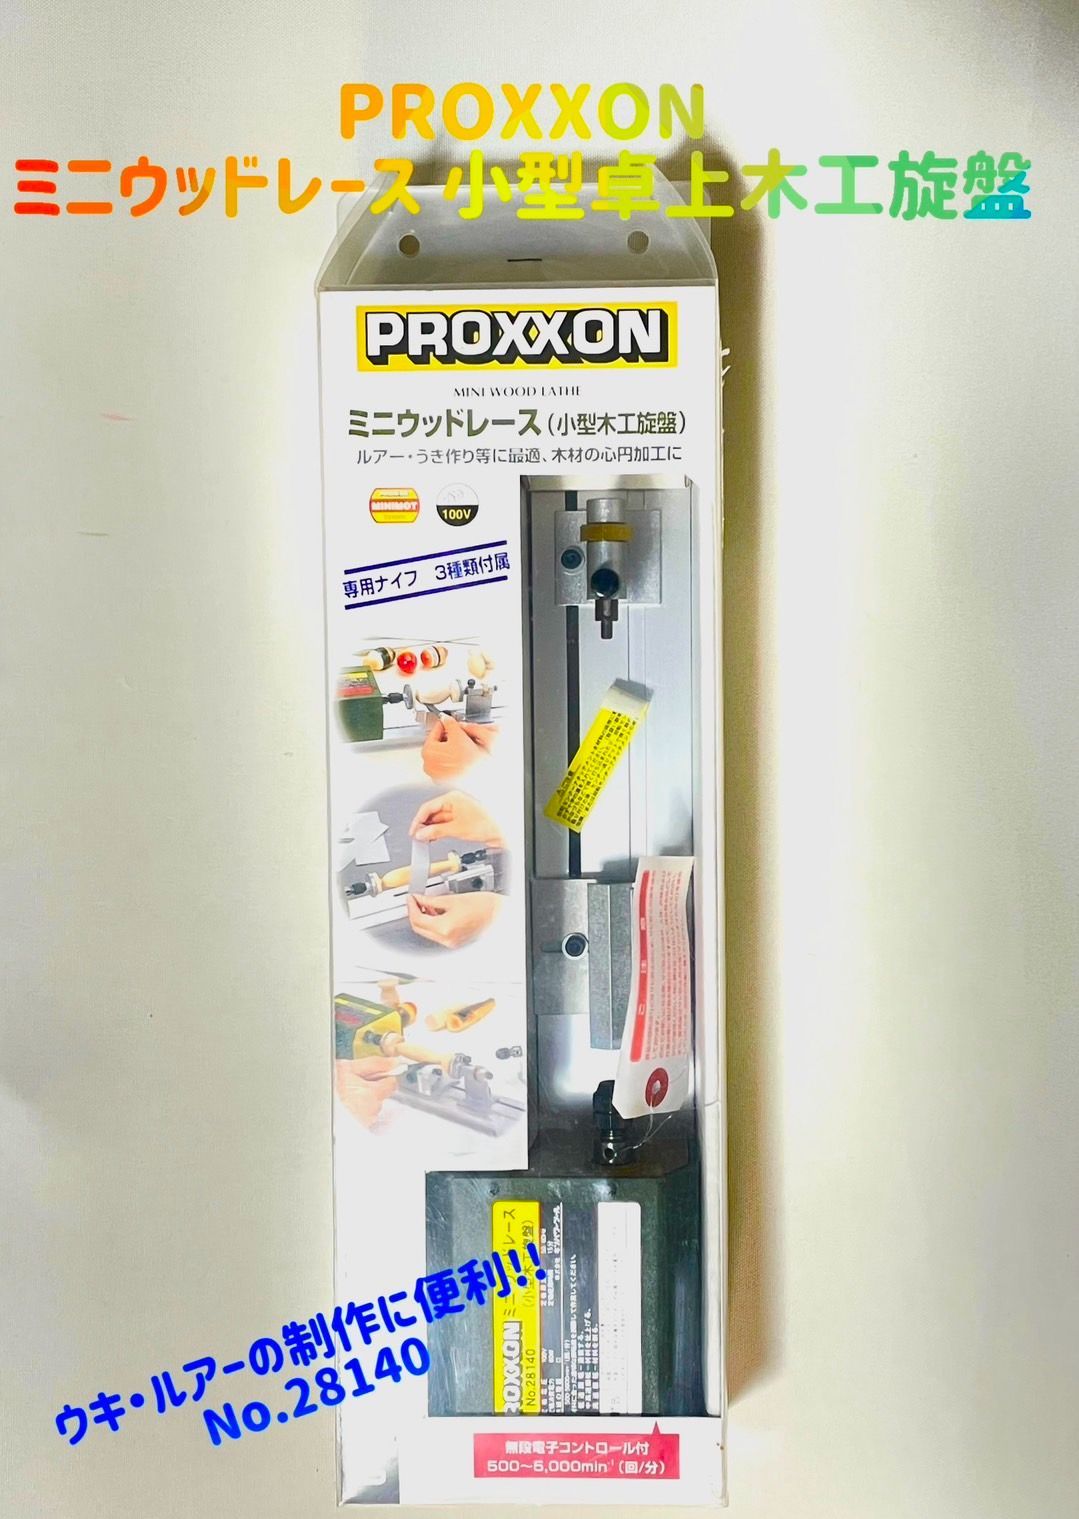 プロクソン(PROXXON) ミニウッドレース 小型卓上木工旋盤 ウキ・ルアーの制作に便利 No.28140 - 1